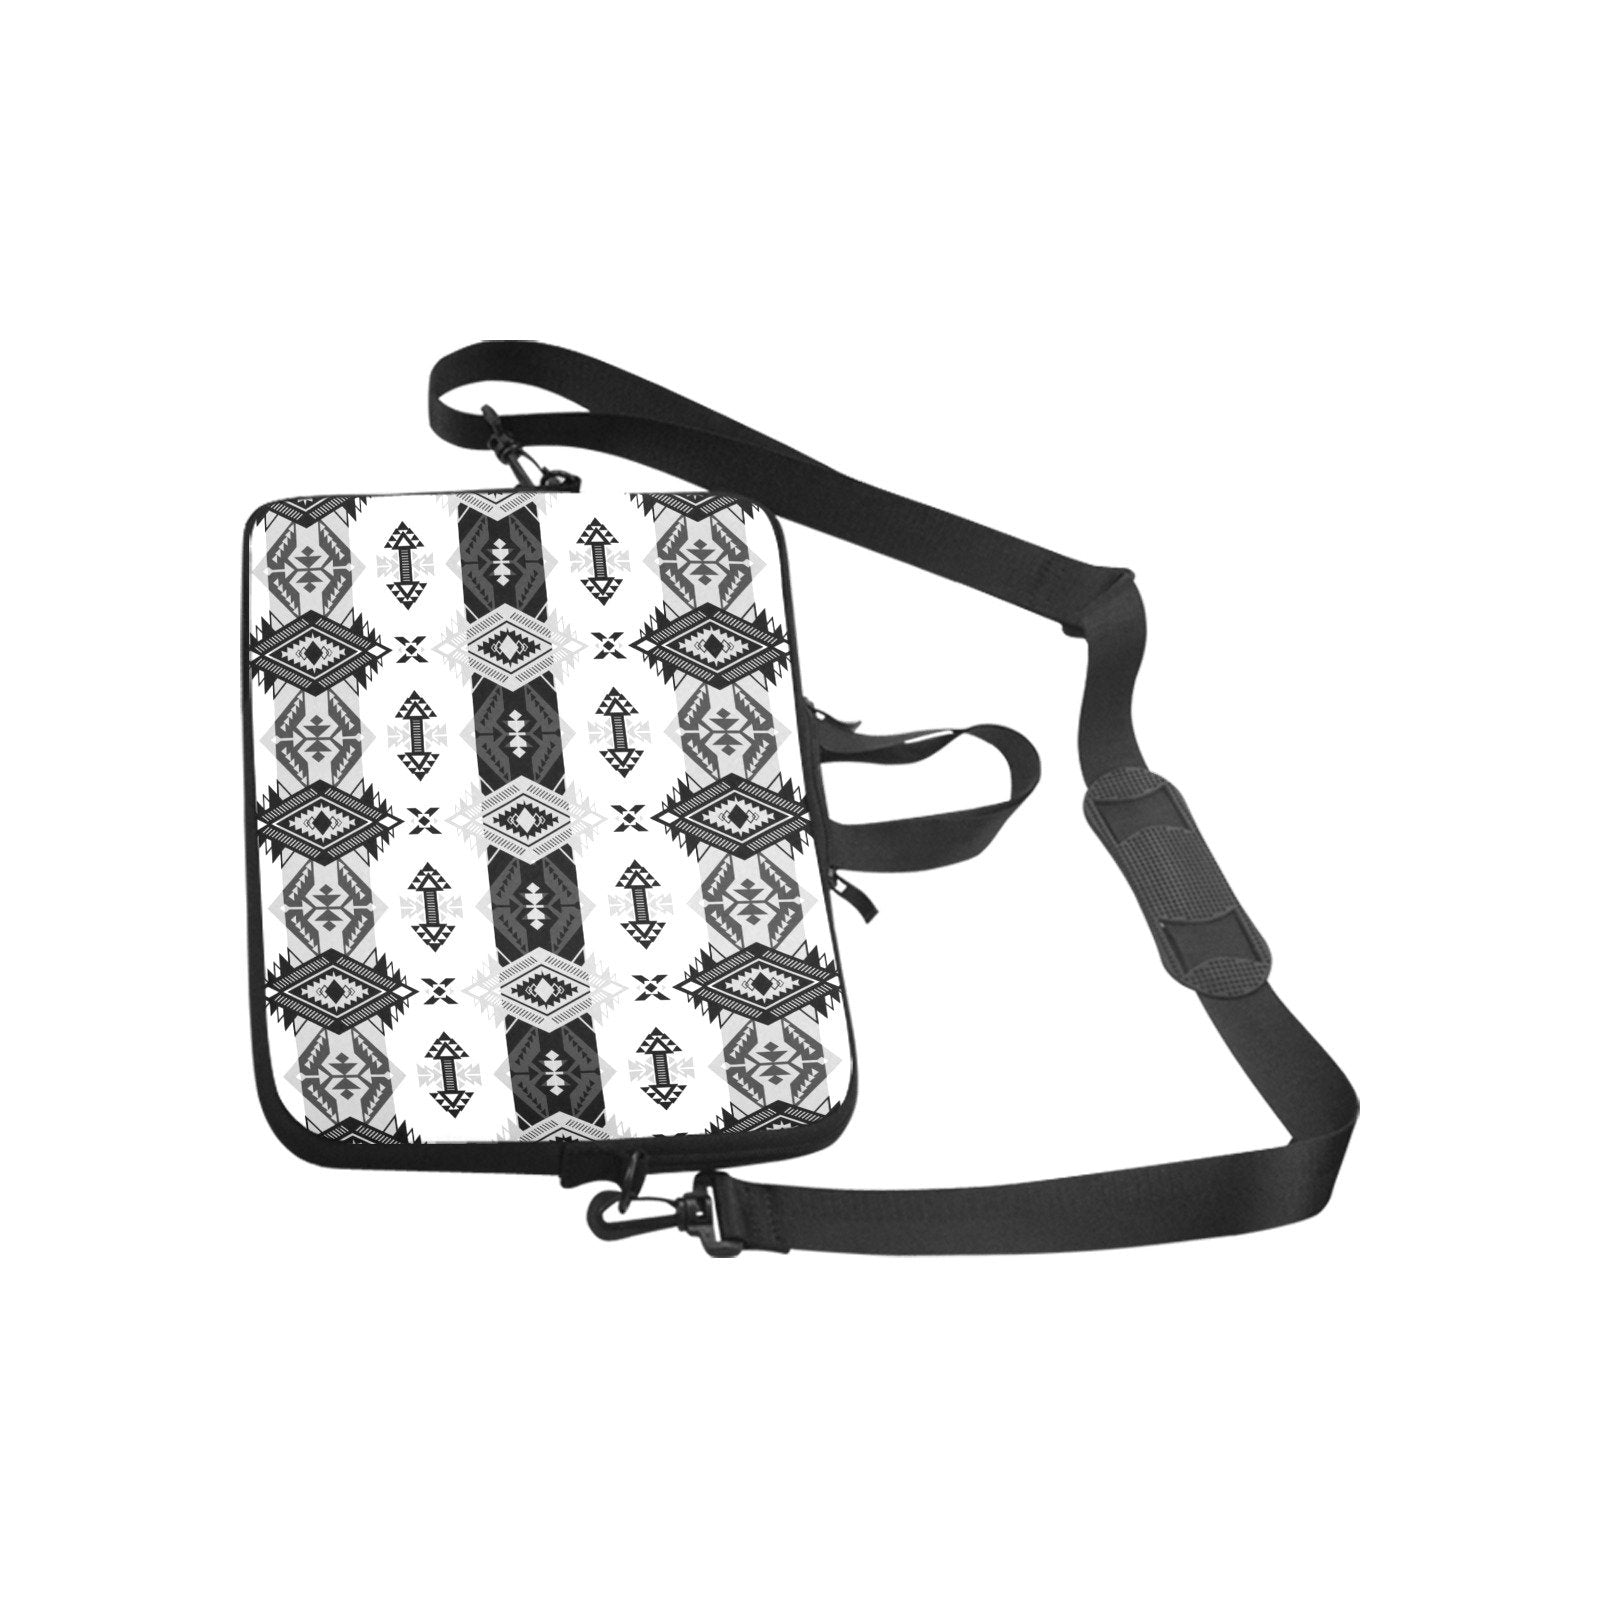 Sovereign Nation Black and White Laptop Handbags 14" bag e-joyer 